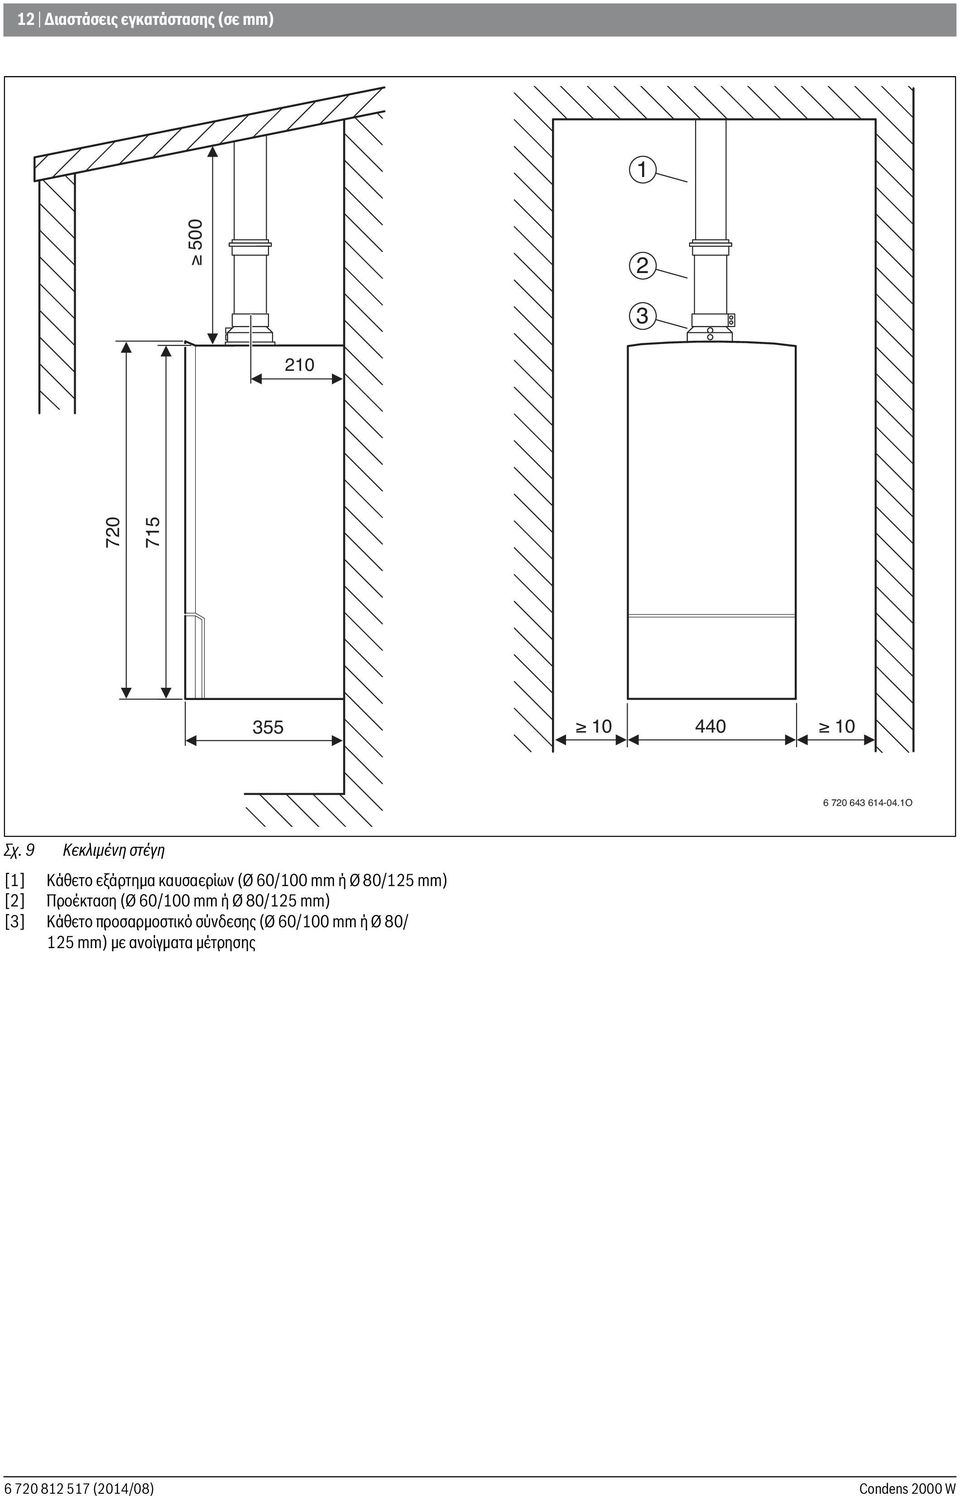 9 Κεκλιμένη στέγη [1] Κάθετο εξάρτημα καυσαερίων (Ø 60/100 mm ή Ø 80/125